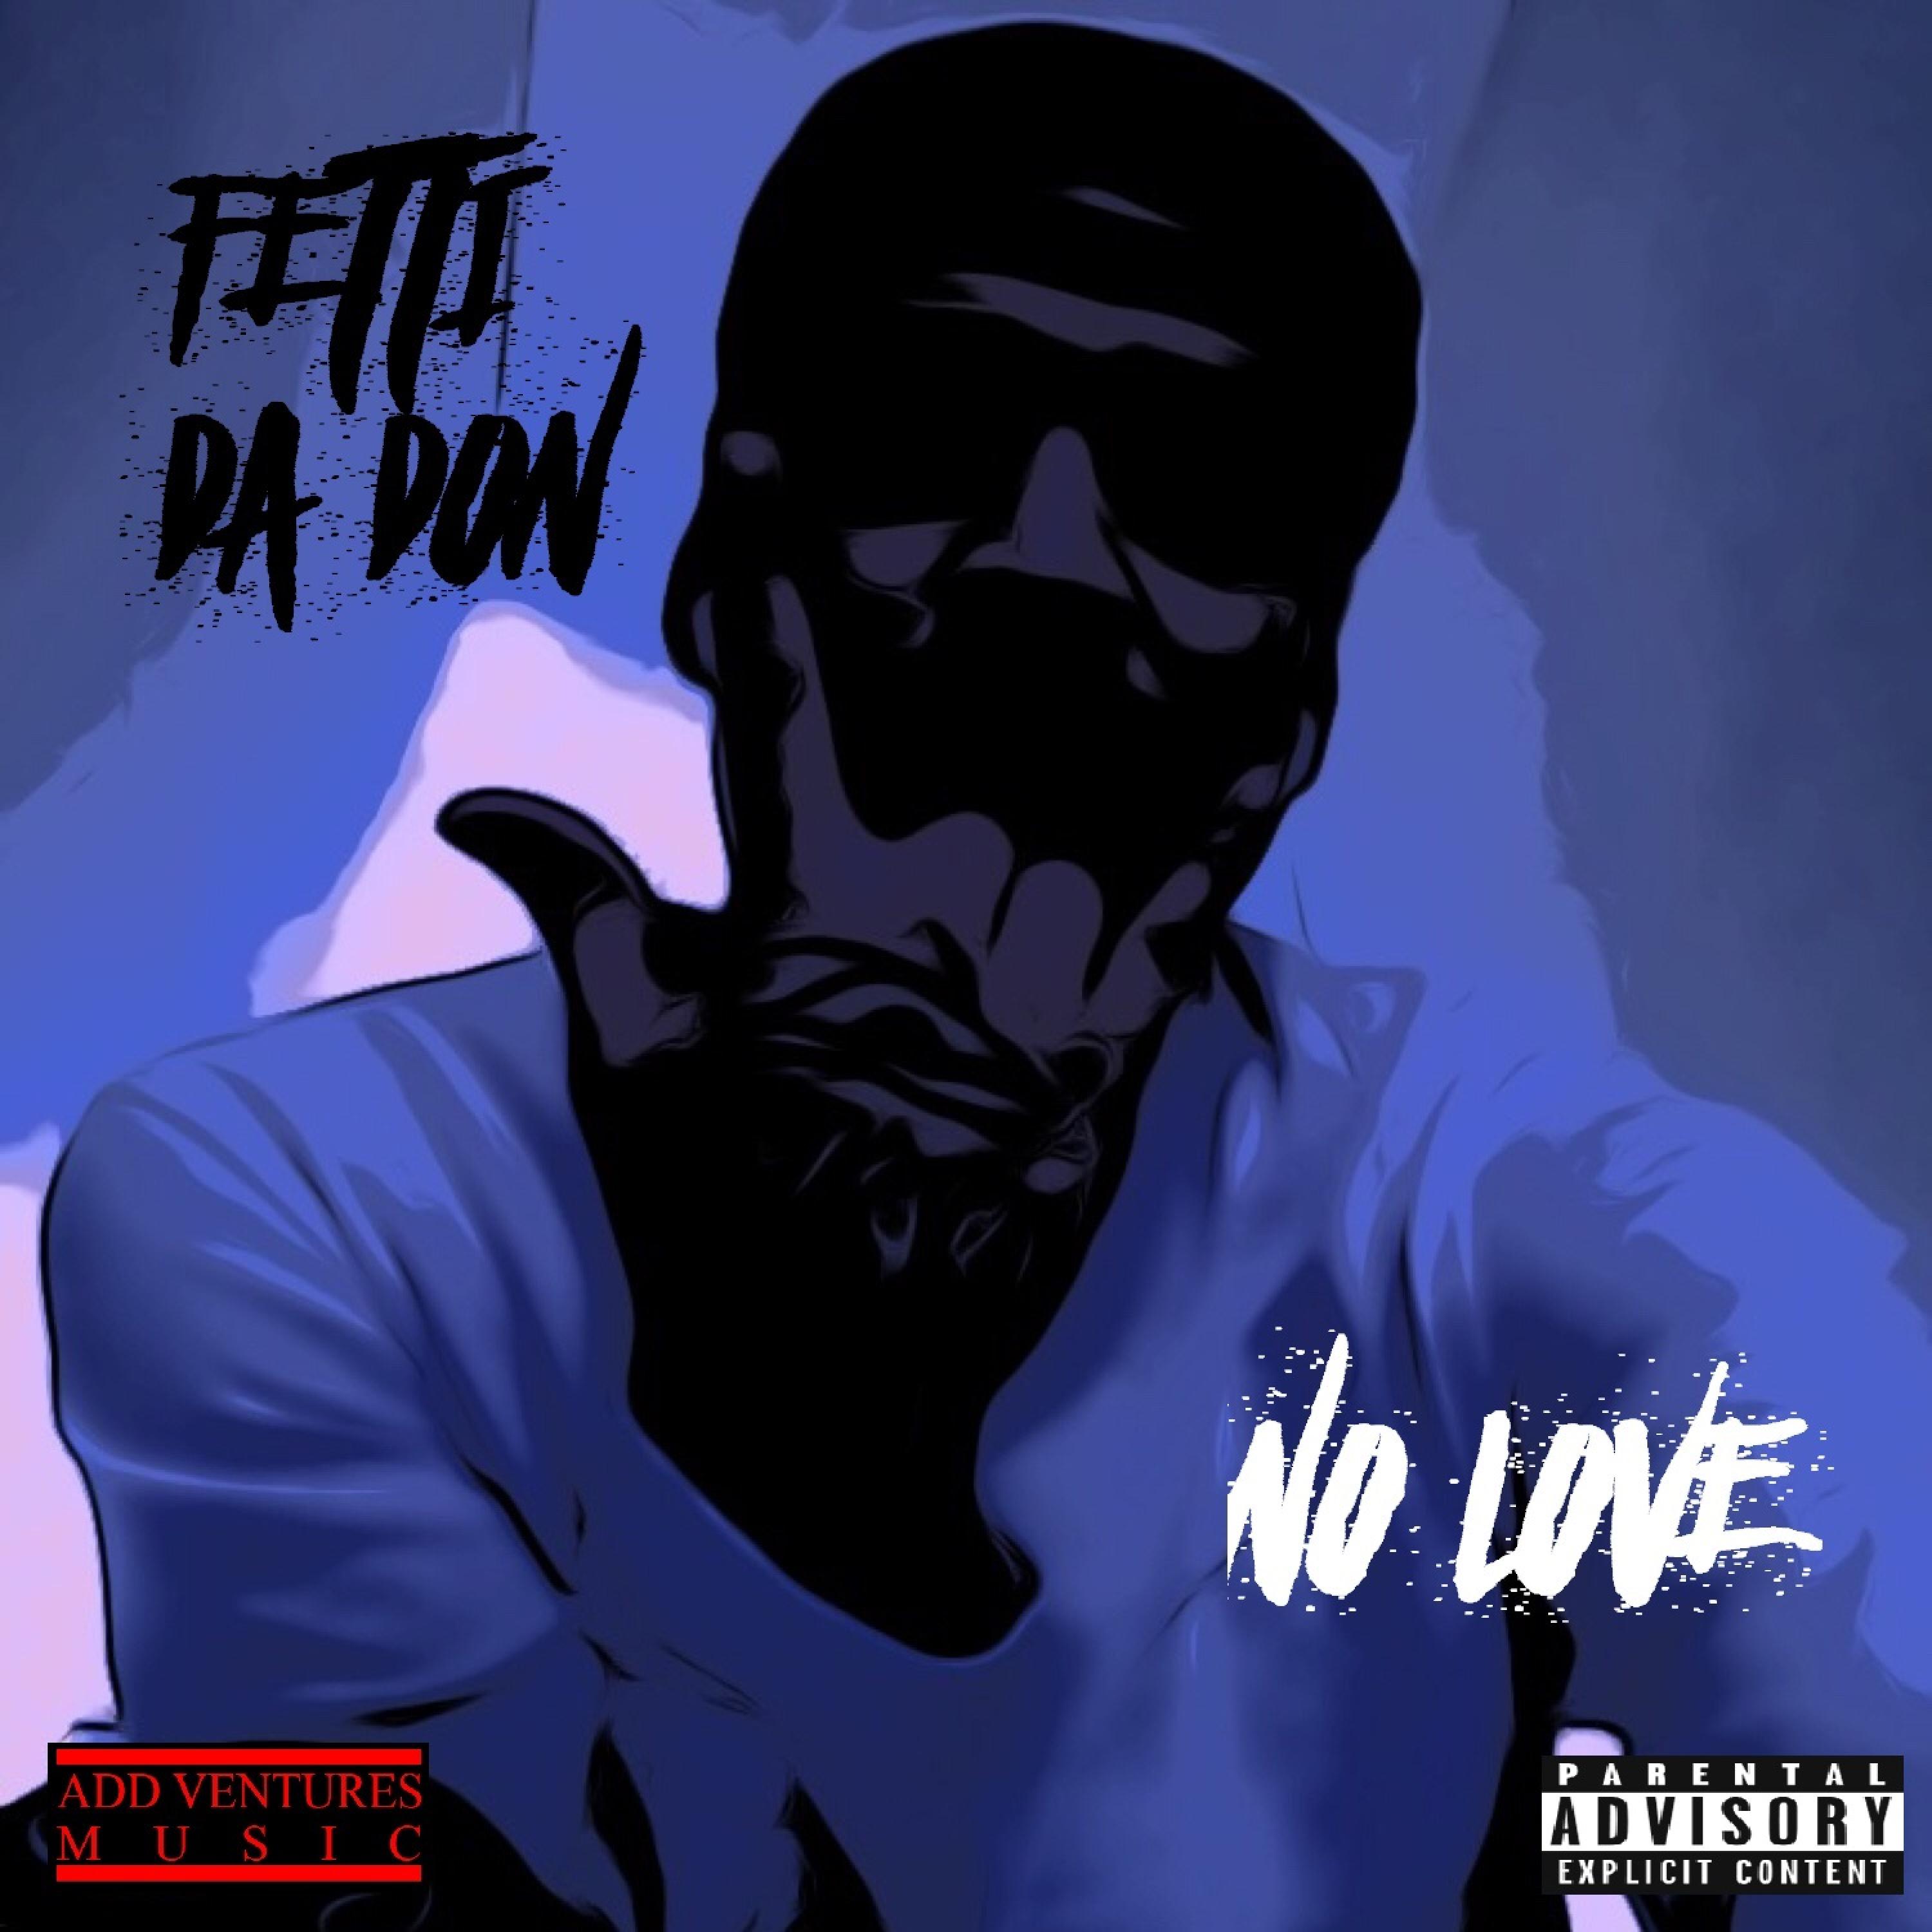 Fetti Da Don - No Love